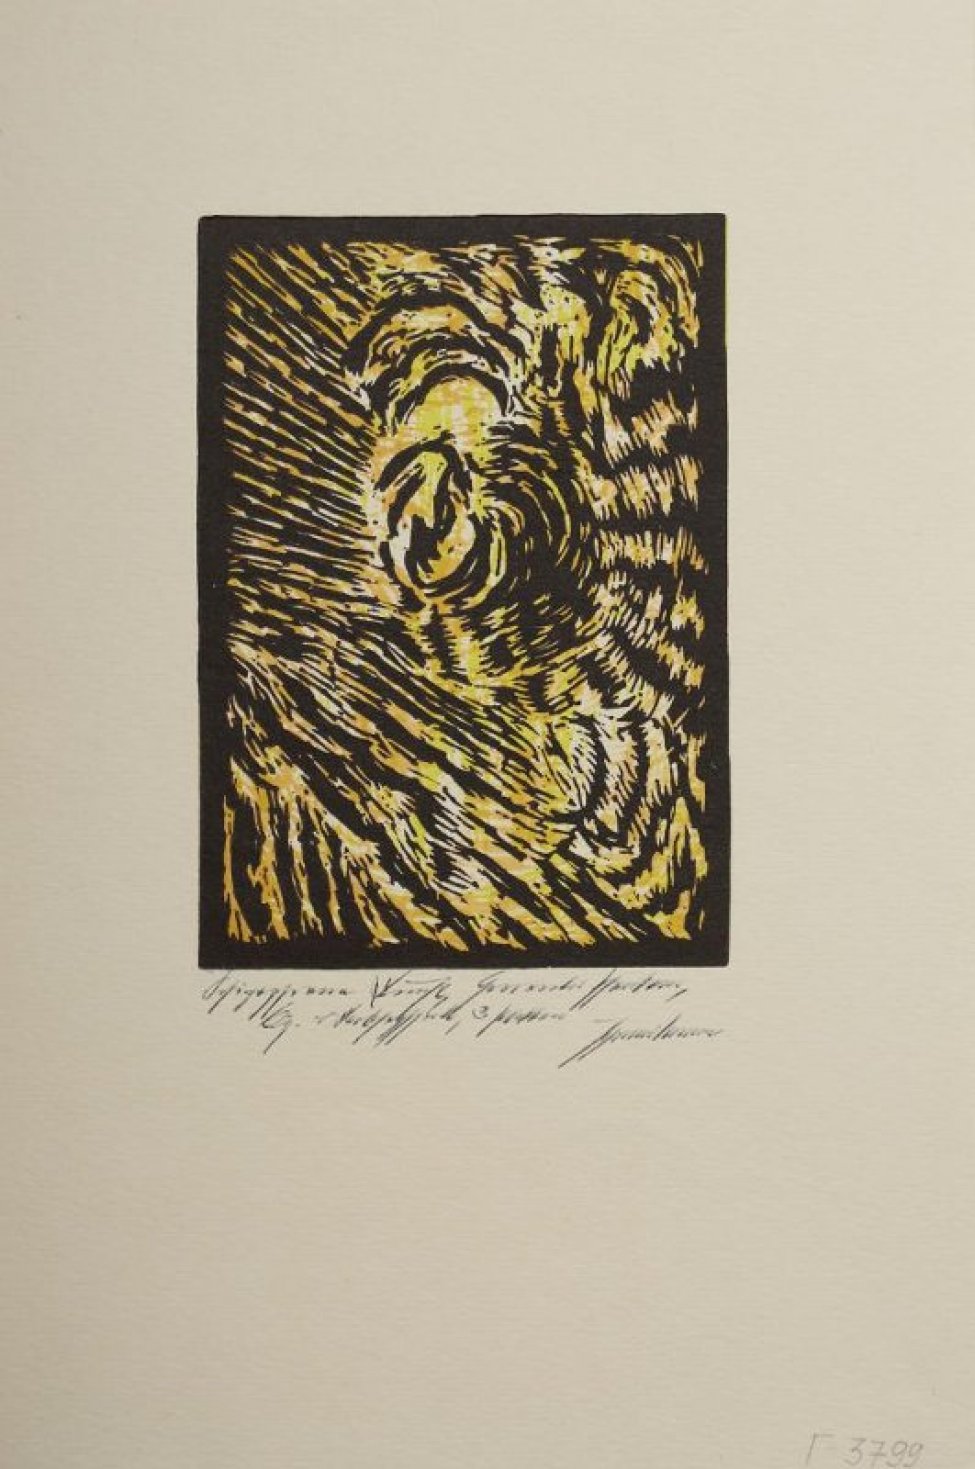 Пародия на искусство шизофреников: в правом верхнем углу едва выступает голова фантастического зверя; весь лист в охристо-желтых и черных штрихах.